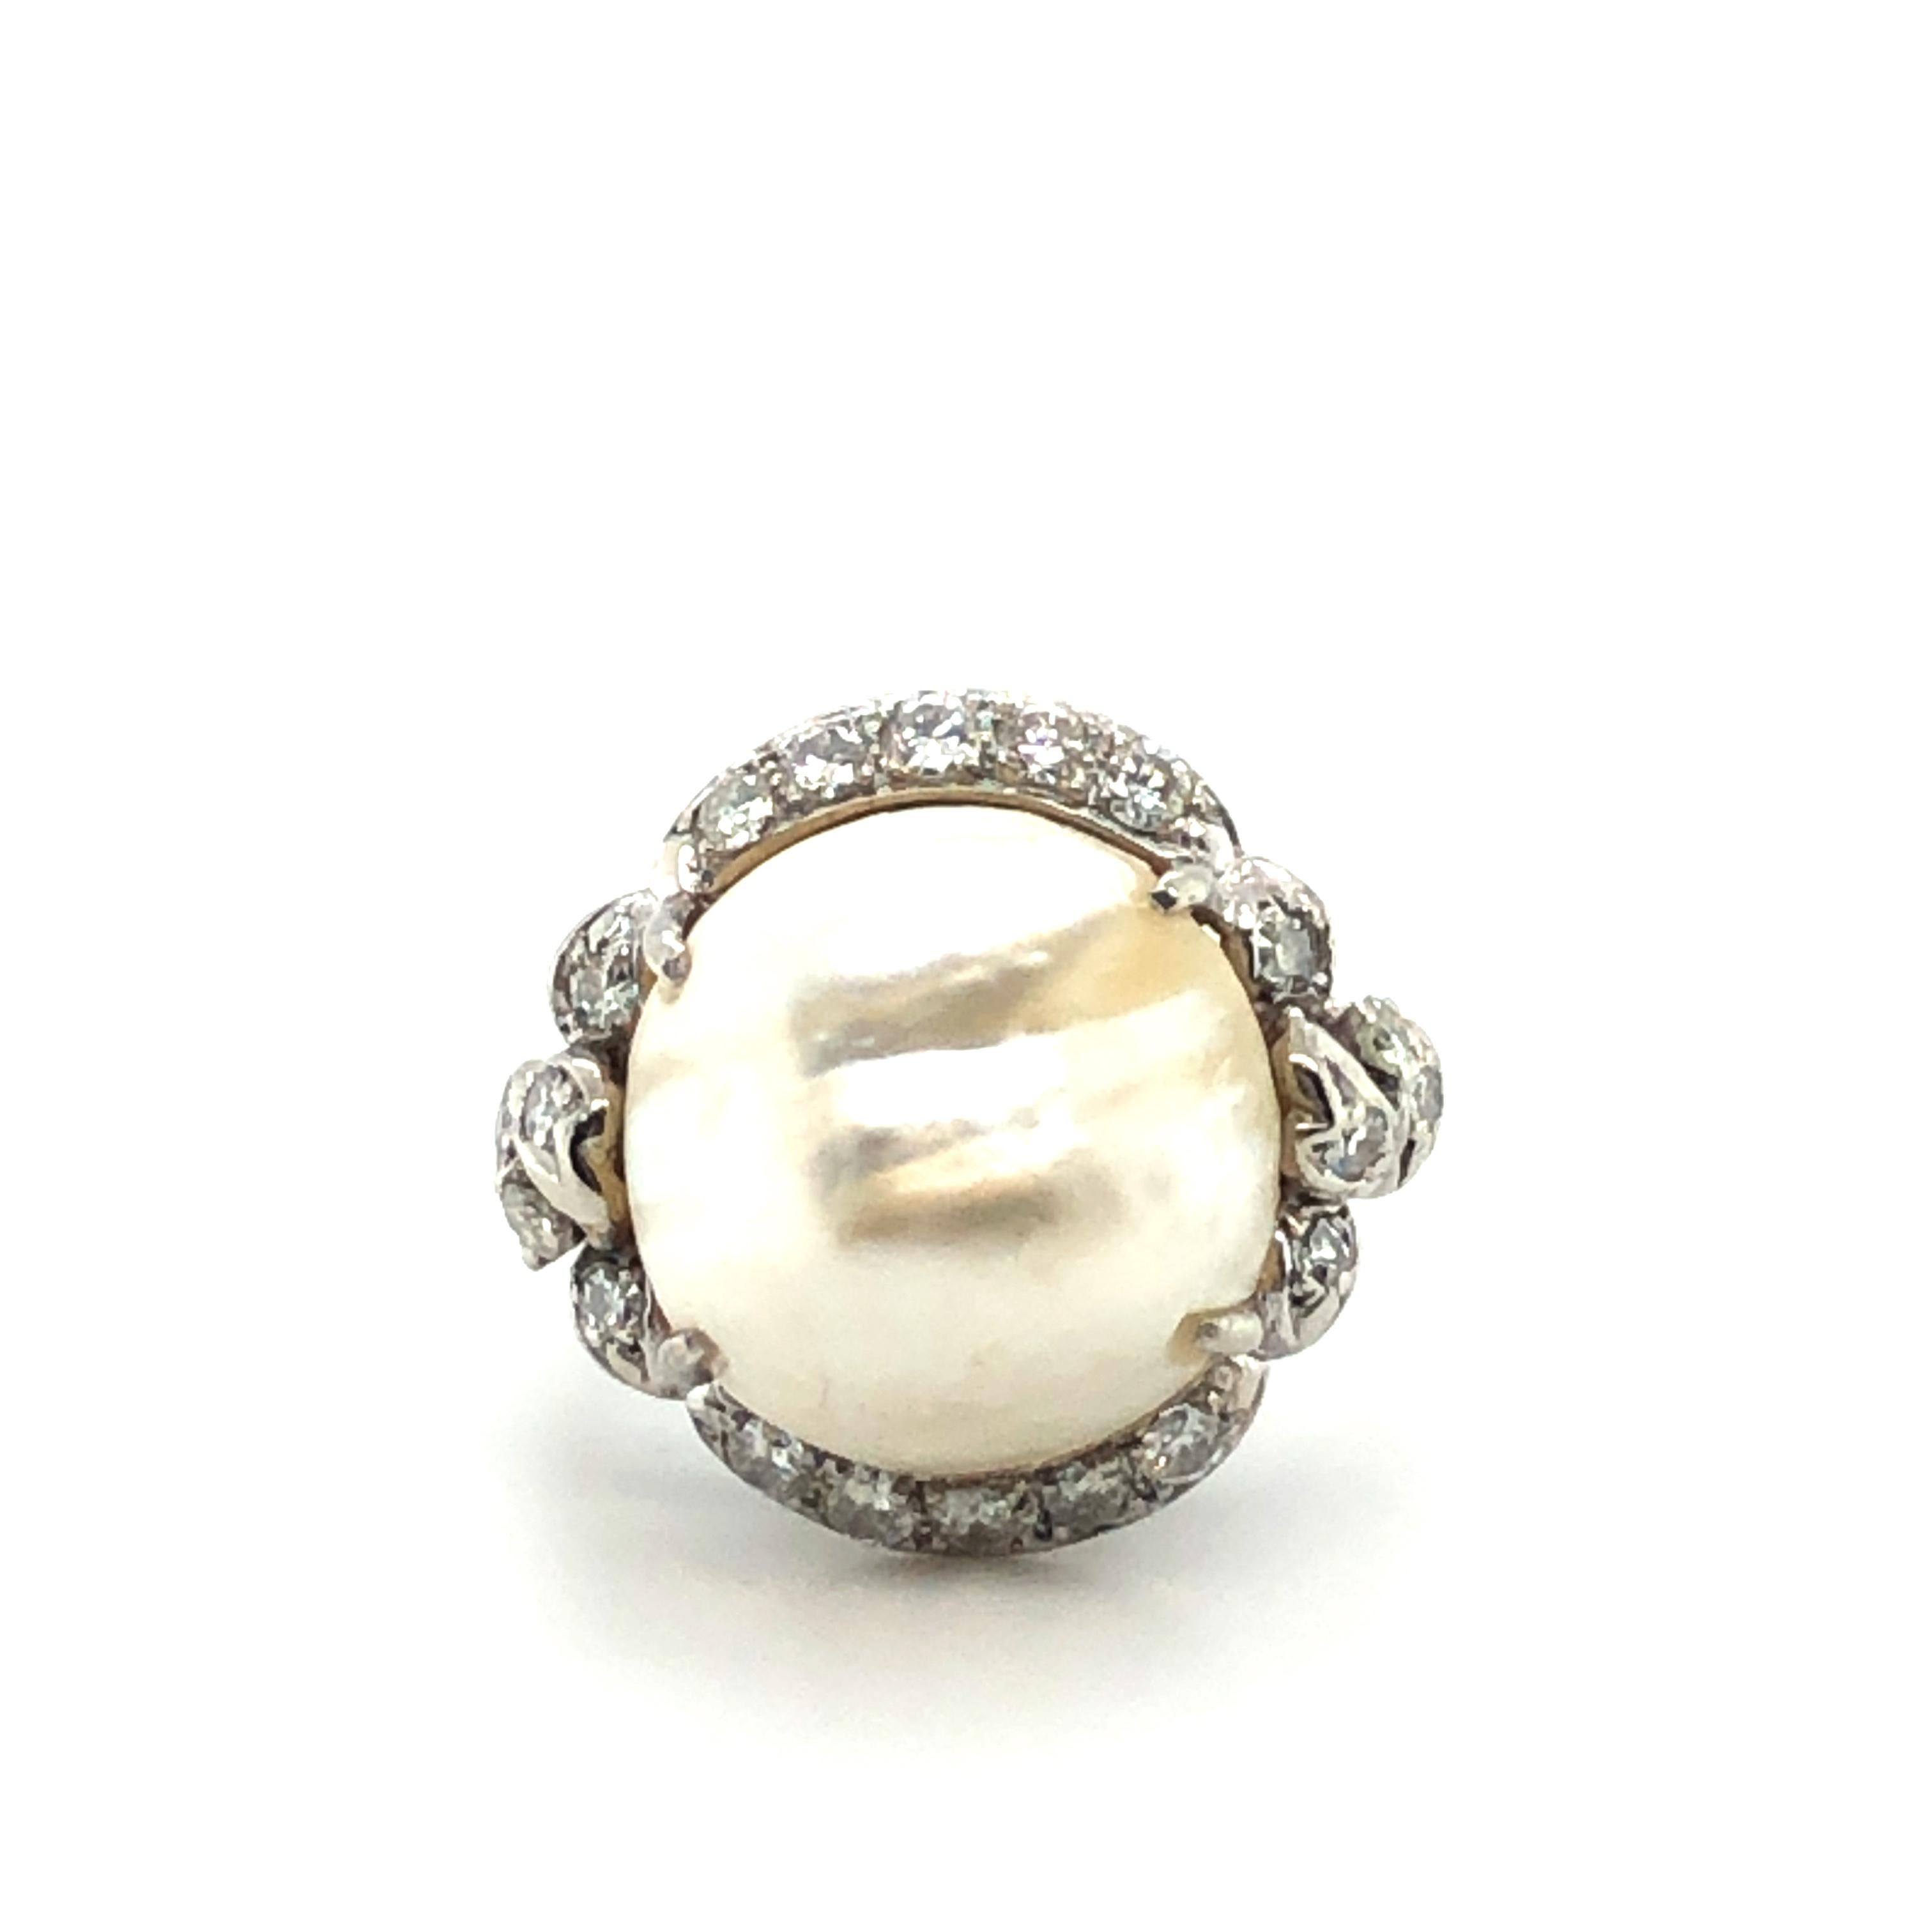 Die 20 Diamanten im Brillant- und Einzelschliff mit einem Gesamtgewicht von 0,50 ct ranken sich um diese wunderschöne Naturblasenperle.
Die Perle mit einem Durchmesser von 13,5 - 13,8 mm / 0,53 - 0,54 inch hat einen besonders weichen Glanz wie